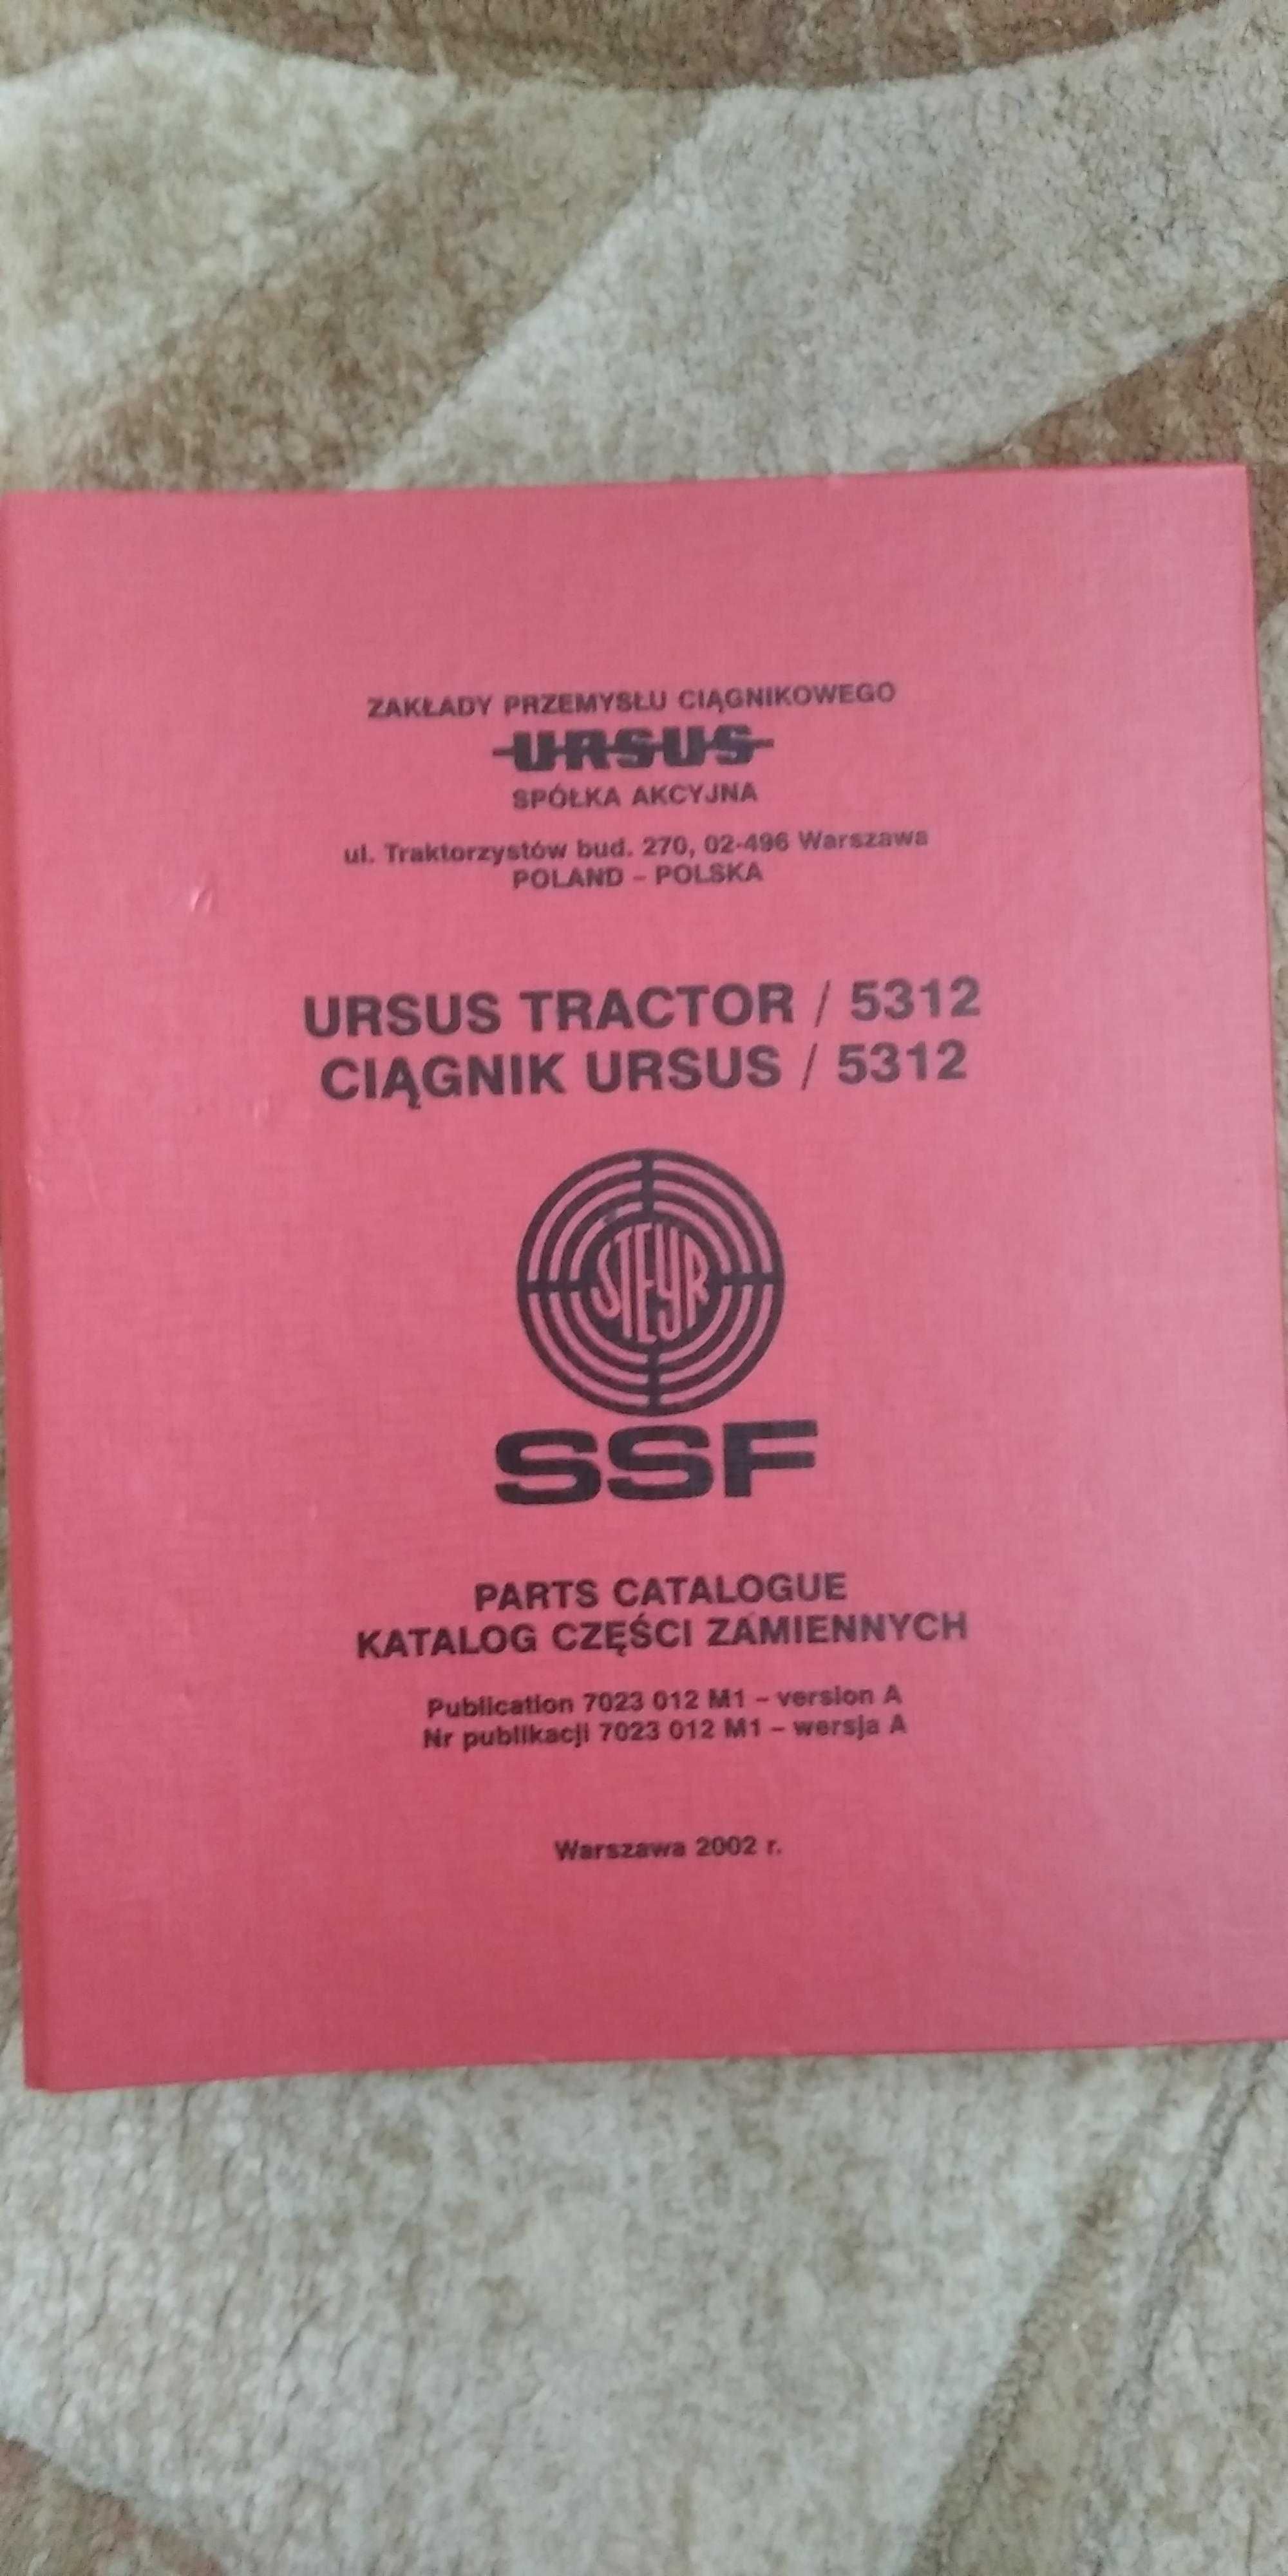 Katalog Ursus 5312 oryginał  Steyr SSF 2002